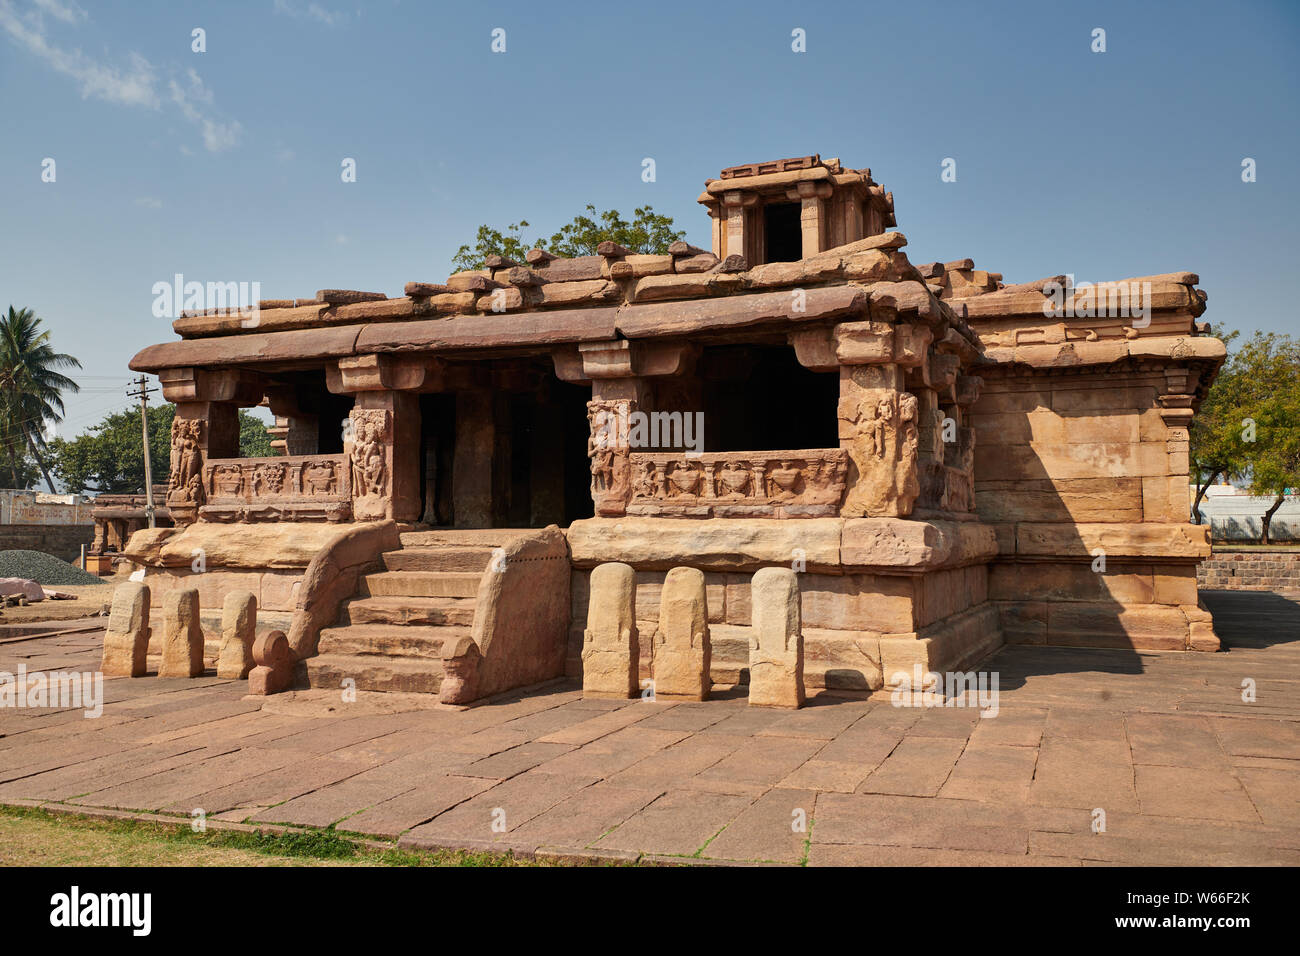 Lad Khan tempio, Aihole, Karnataka, Indien |Lad Khan tempio, Aihole, Karnataka, India| Foto Stock